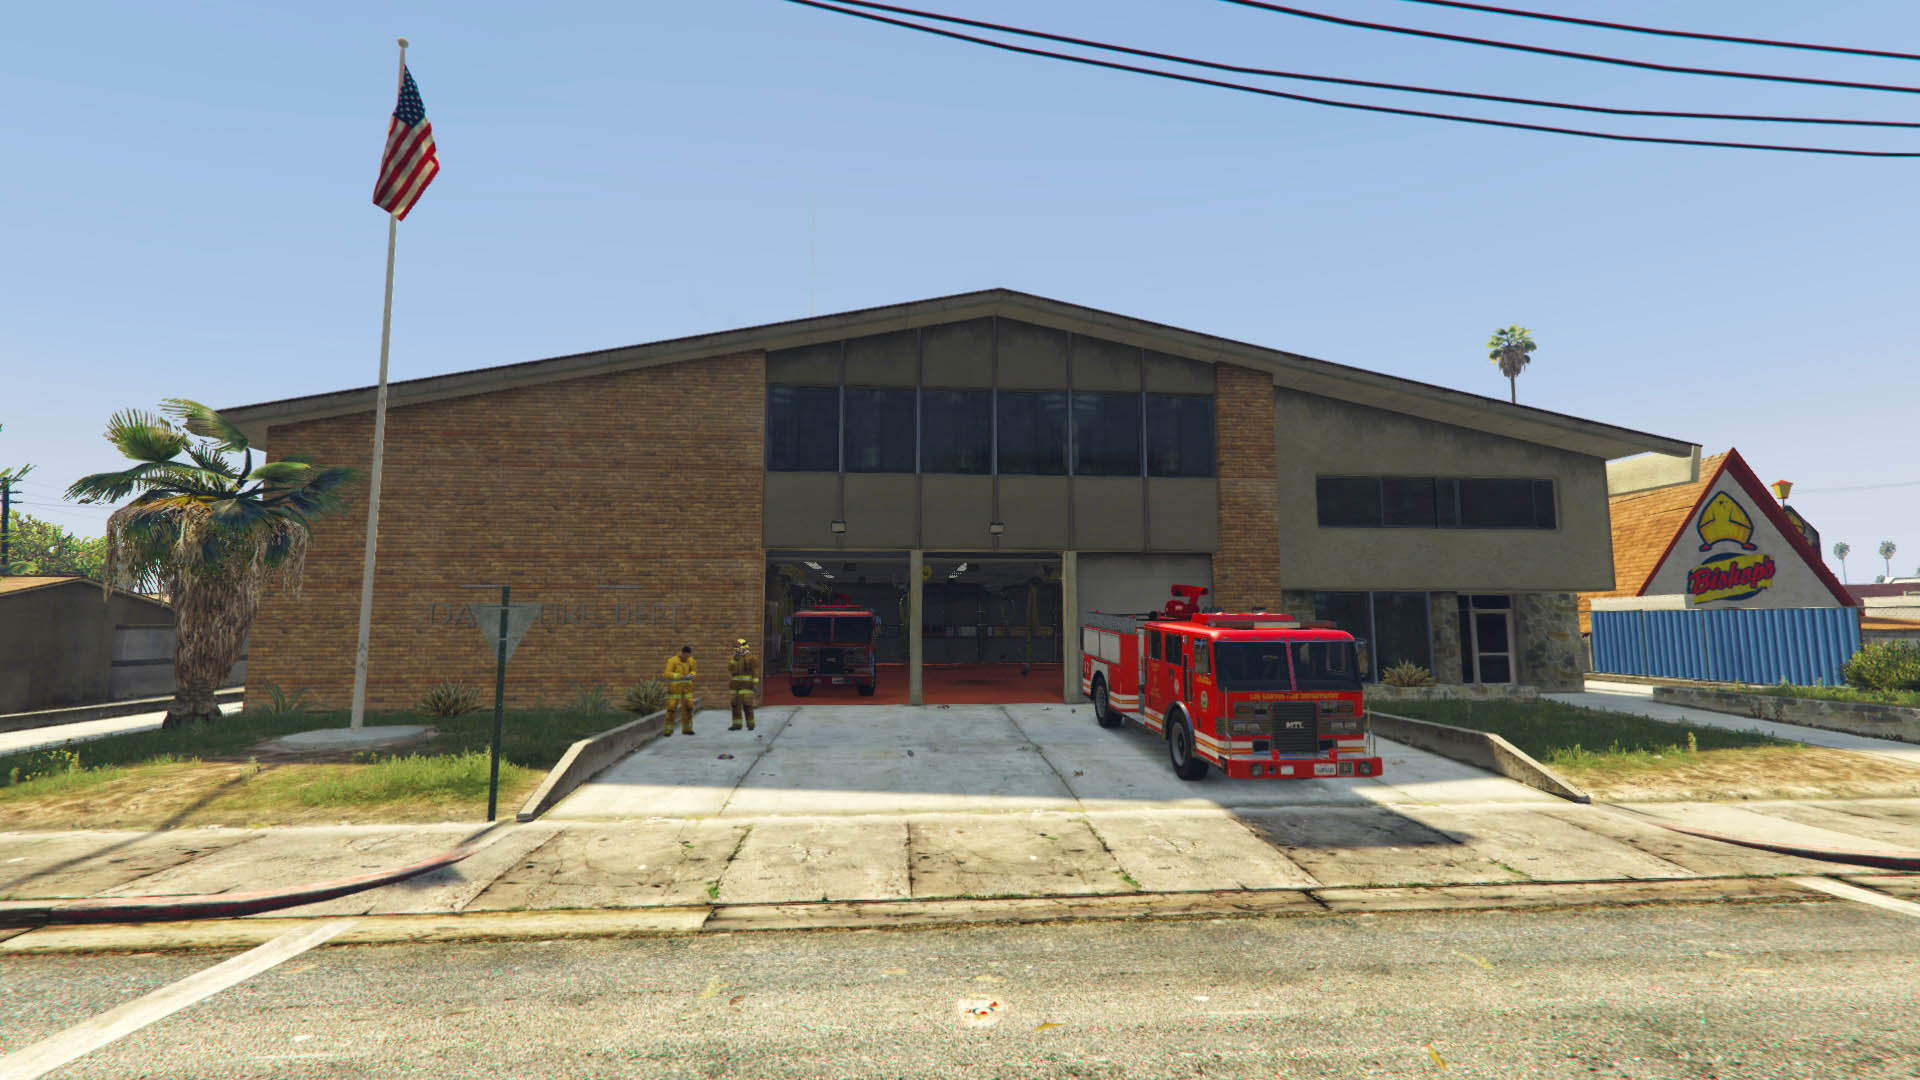 Здание пожарной части в GTA 5 с припаркованным спецтранспортом 